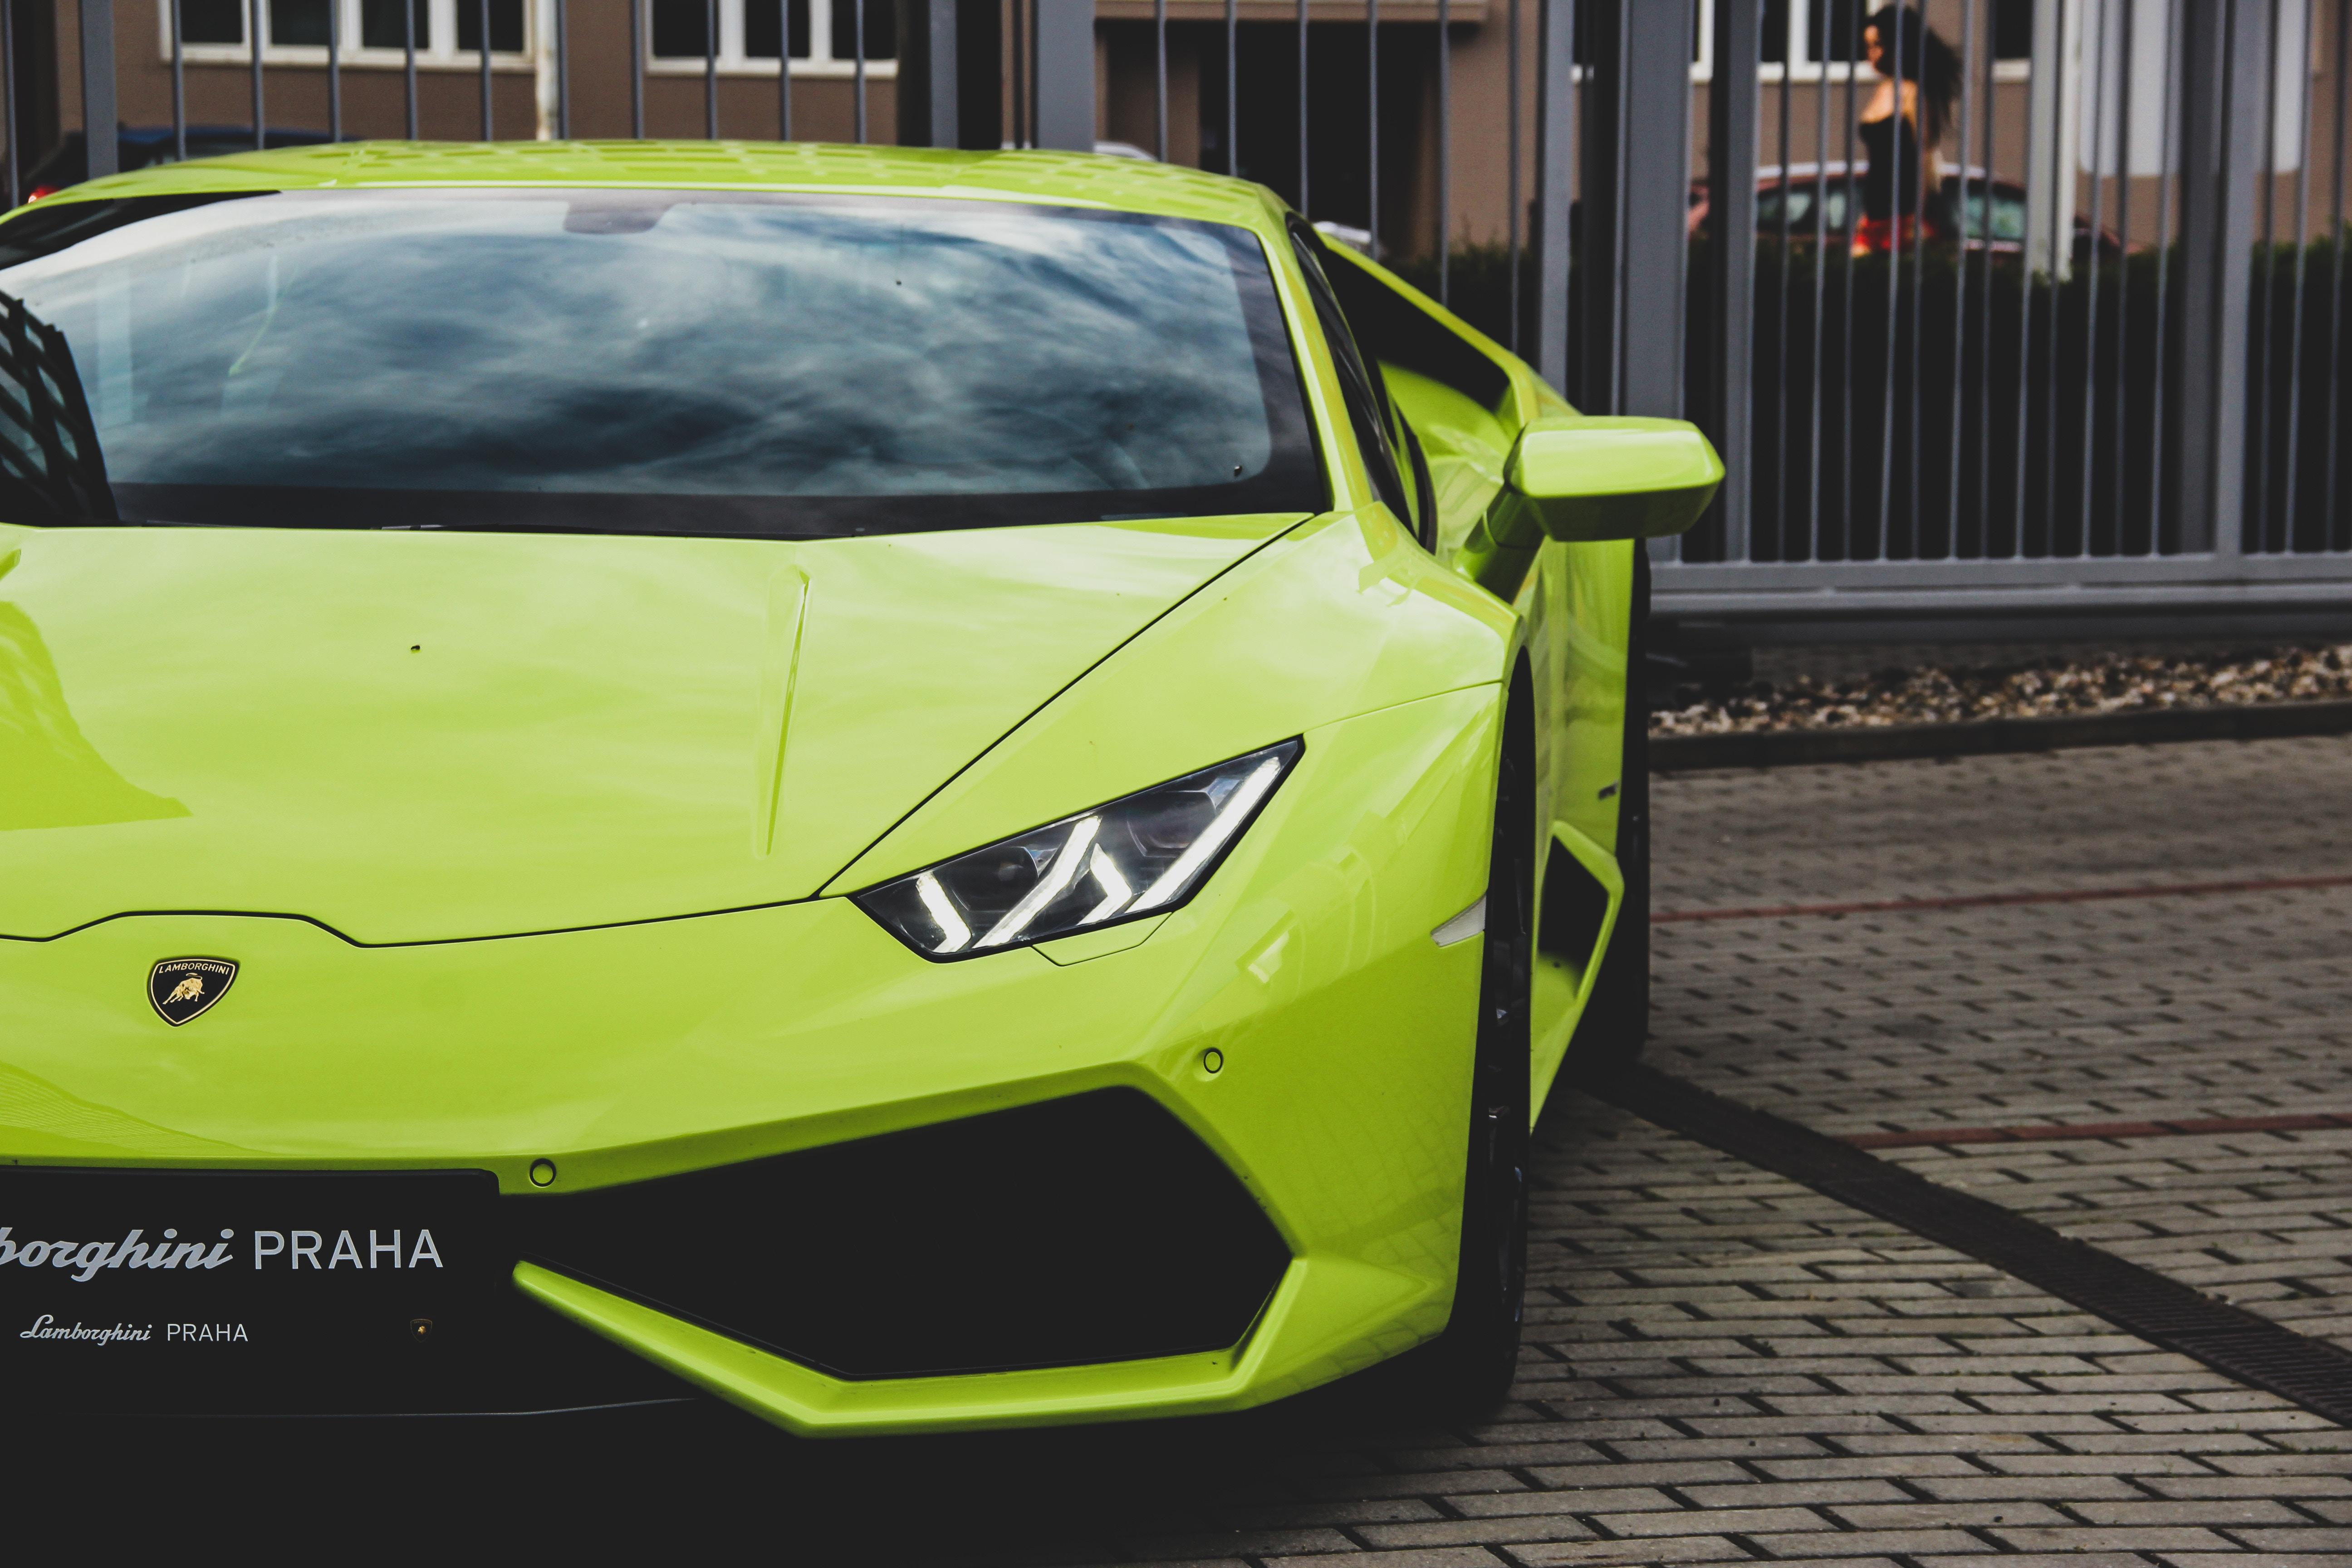 Lamborghini Aventador, Lamborghini, Sports Car, Green, - Lamborghini Aventador Vs Huracan Headlight - HD Wallpaper 